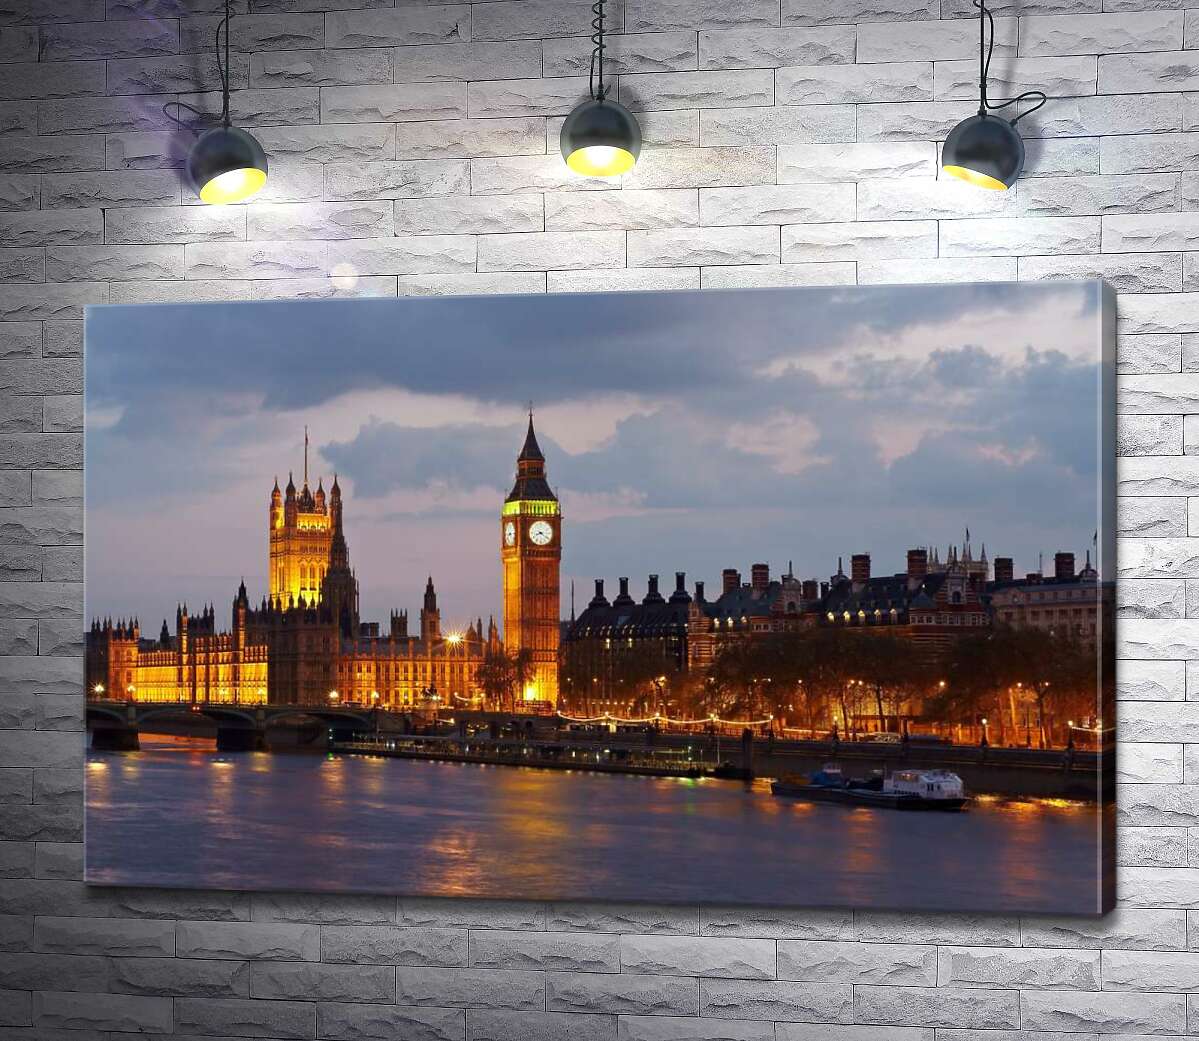 картина Вечерняя набережная Темзы сияет огнями Вестминстерского дворца (Palace of Westminster)